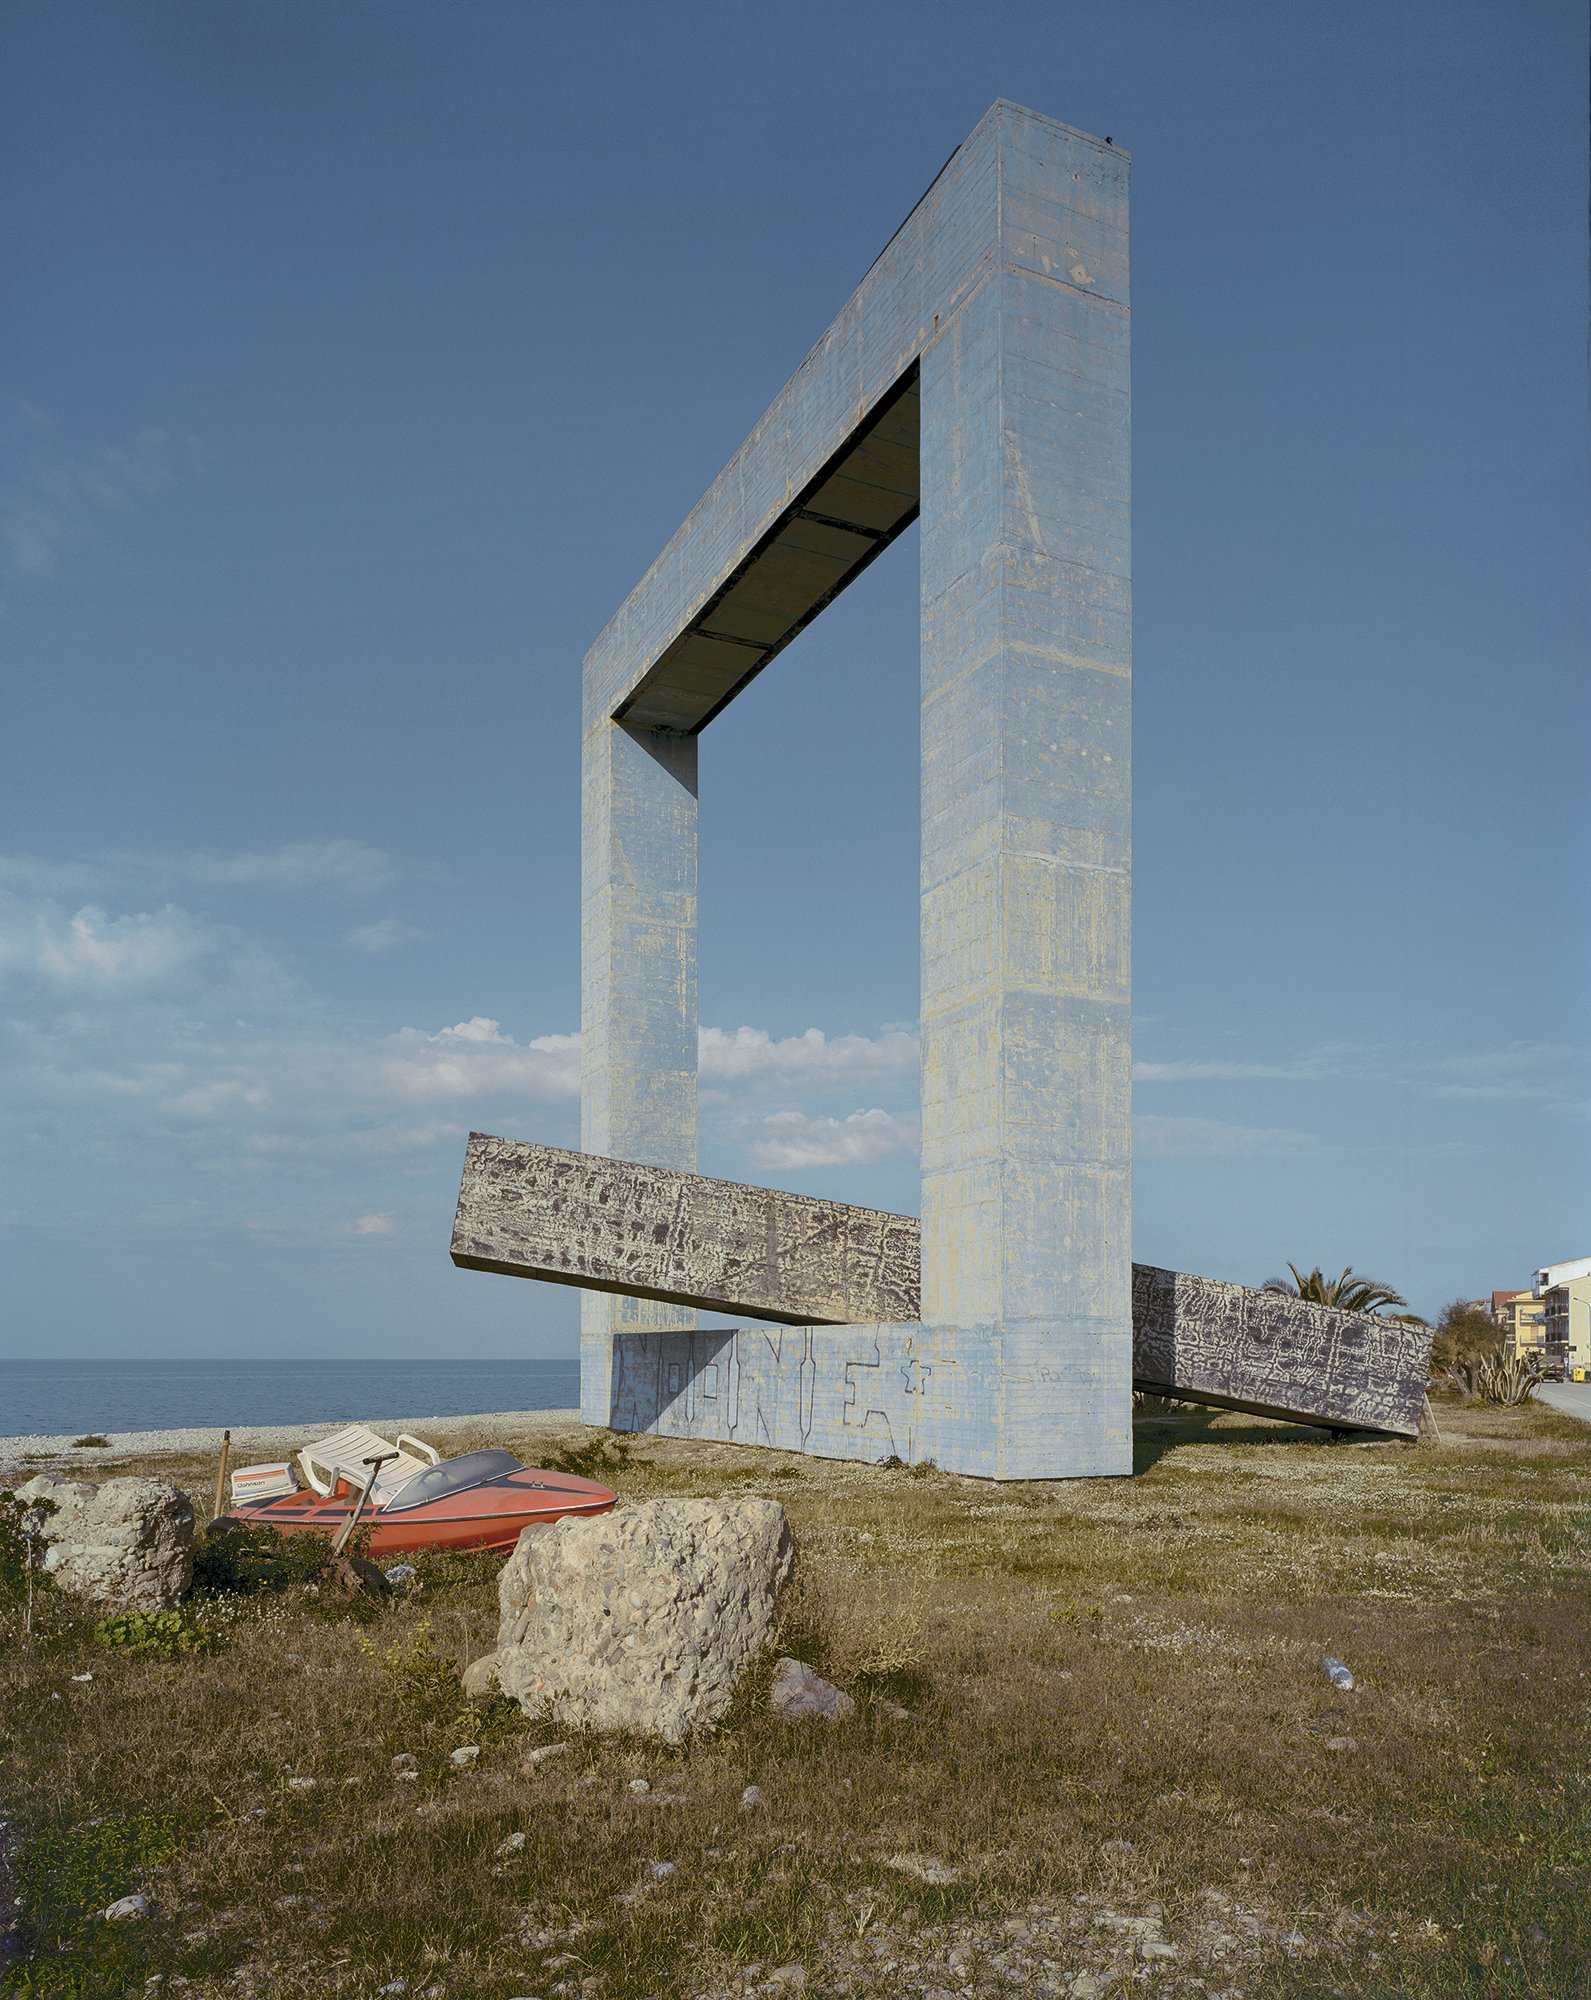  Finestra Sul Mare, S. Stefano. 2005. 